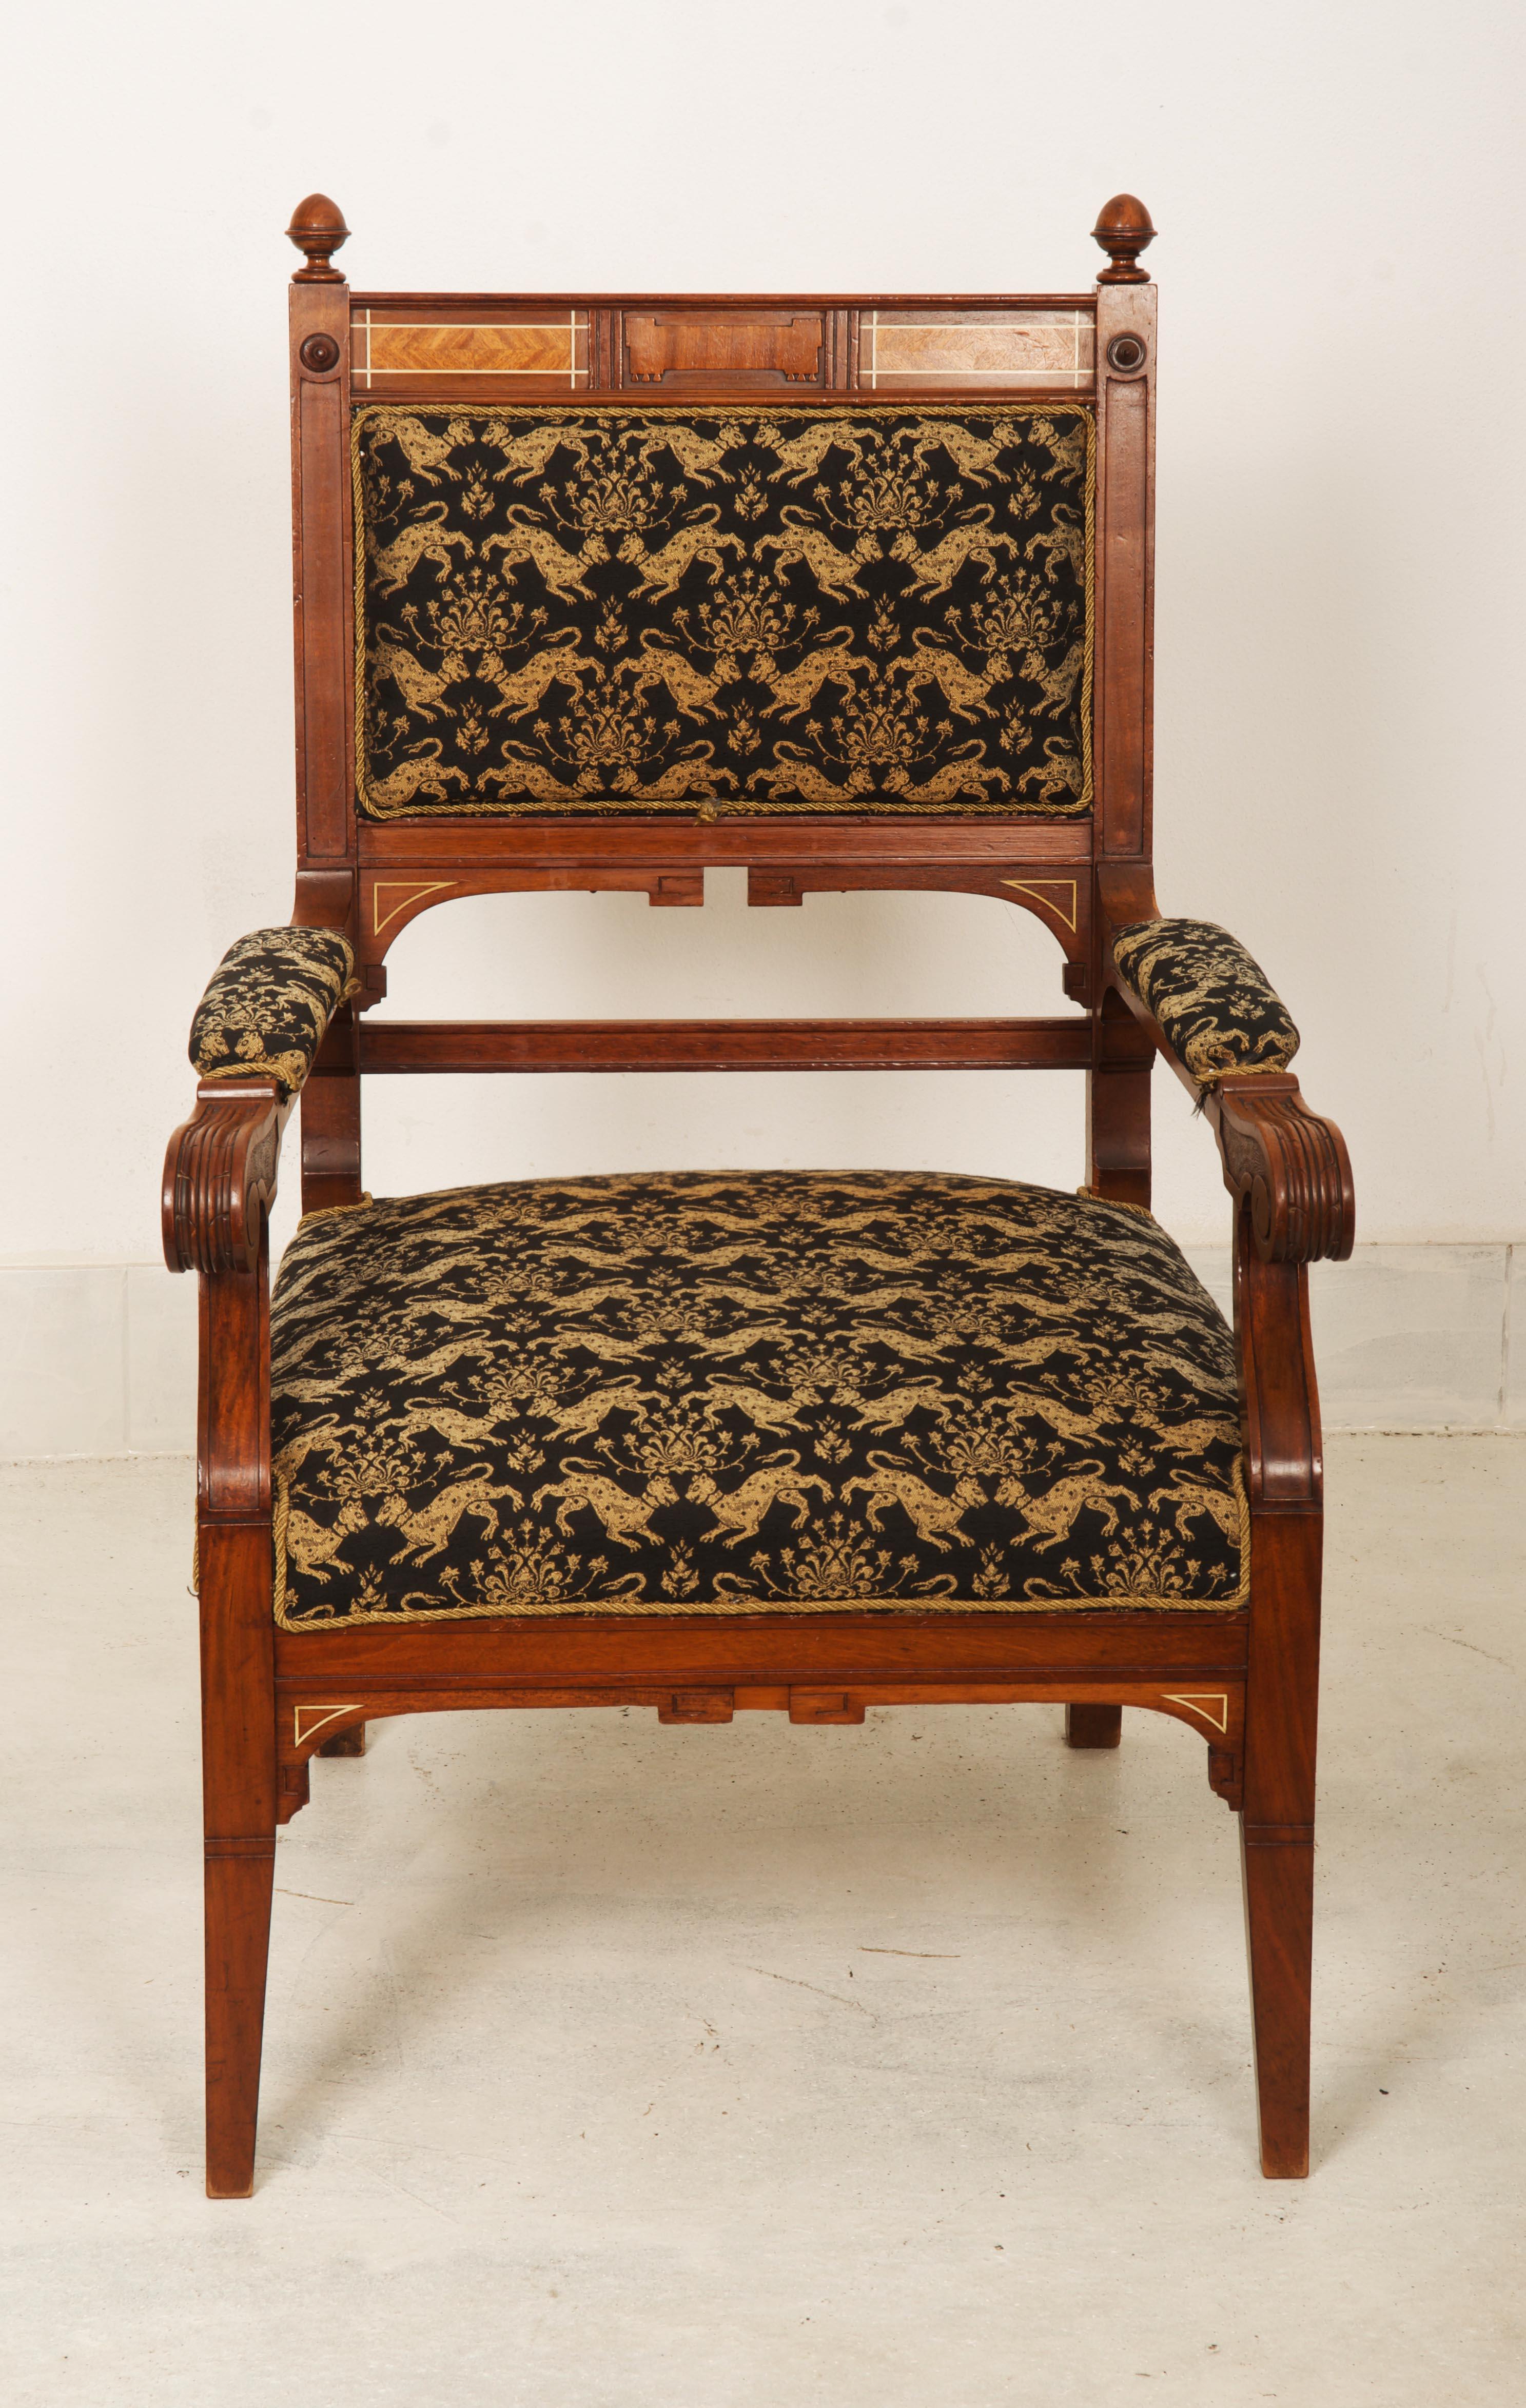 Cadre en bois dur avec siège rembourré fabriqué en Allemagne dans les années 1880.
     